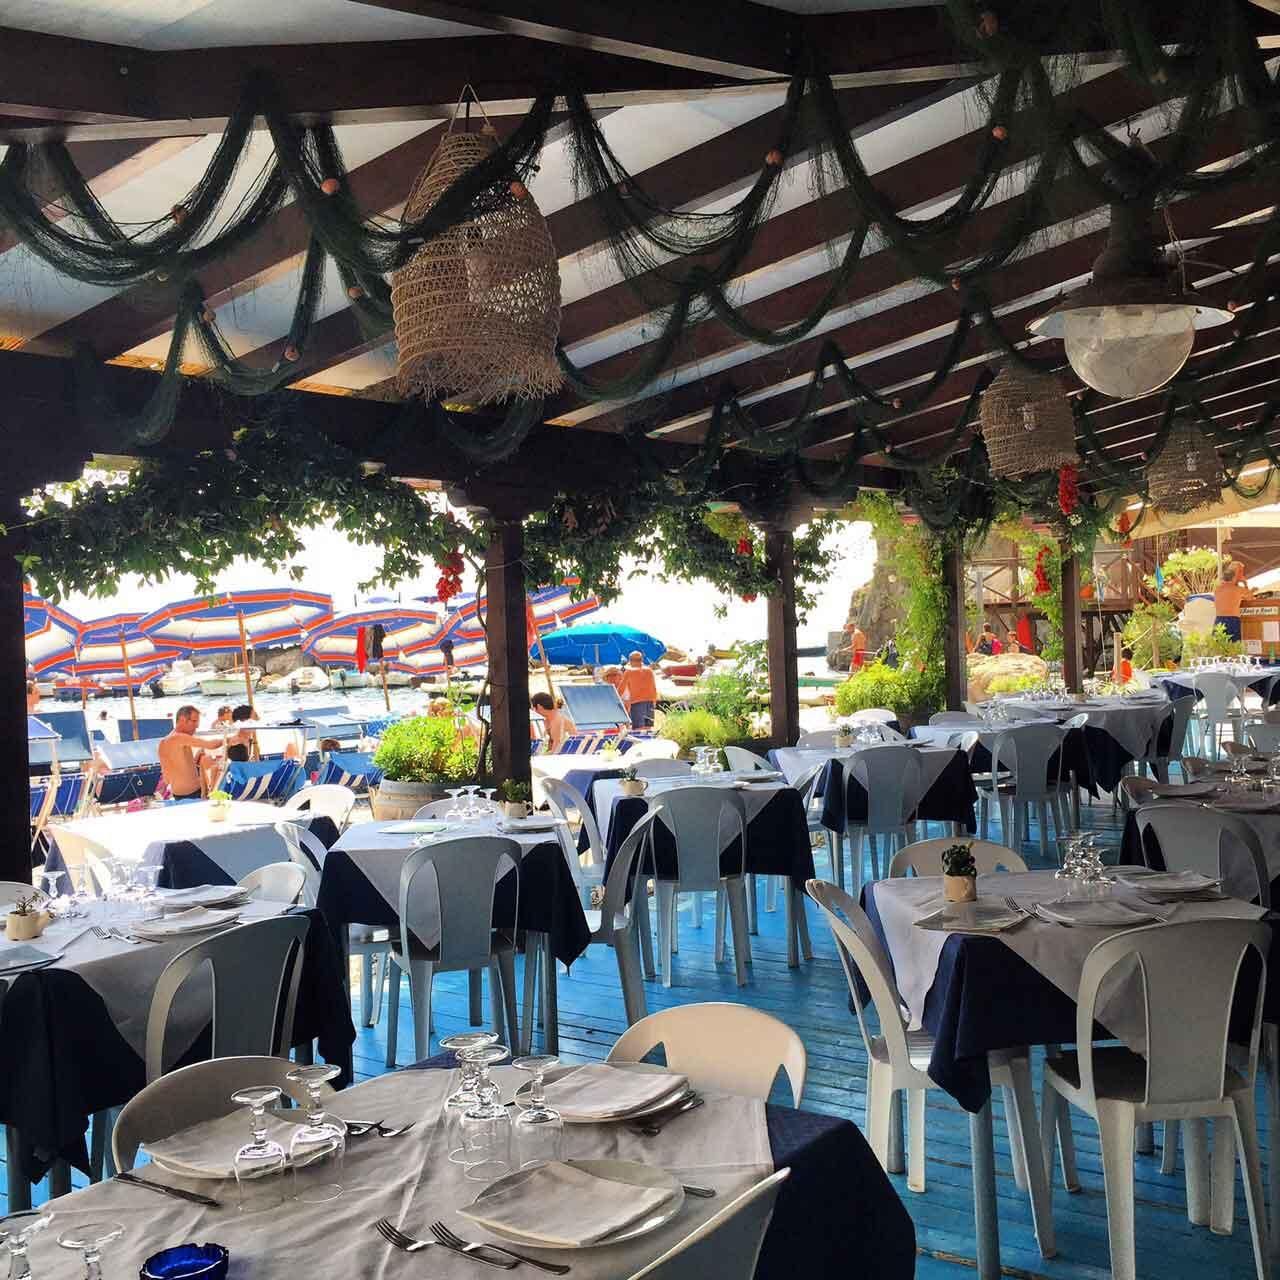 La Tonnarella restaurant on the beach in Conca dei Marini